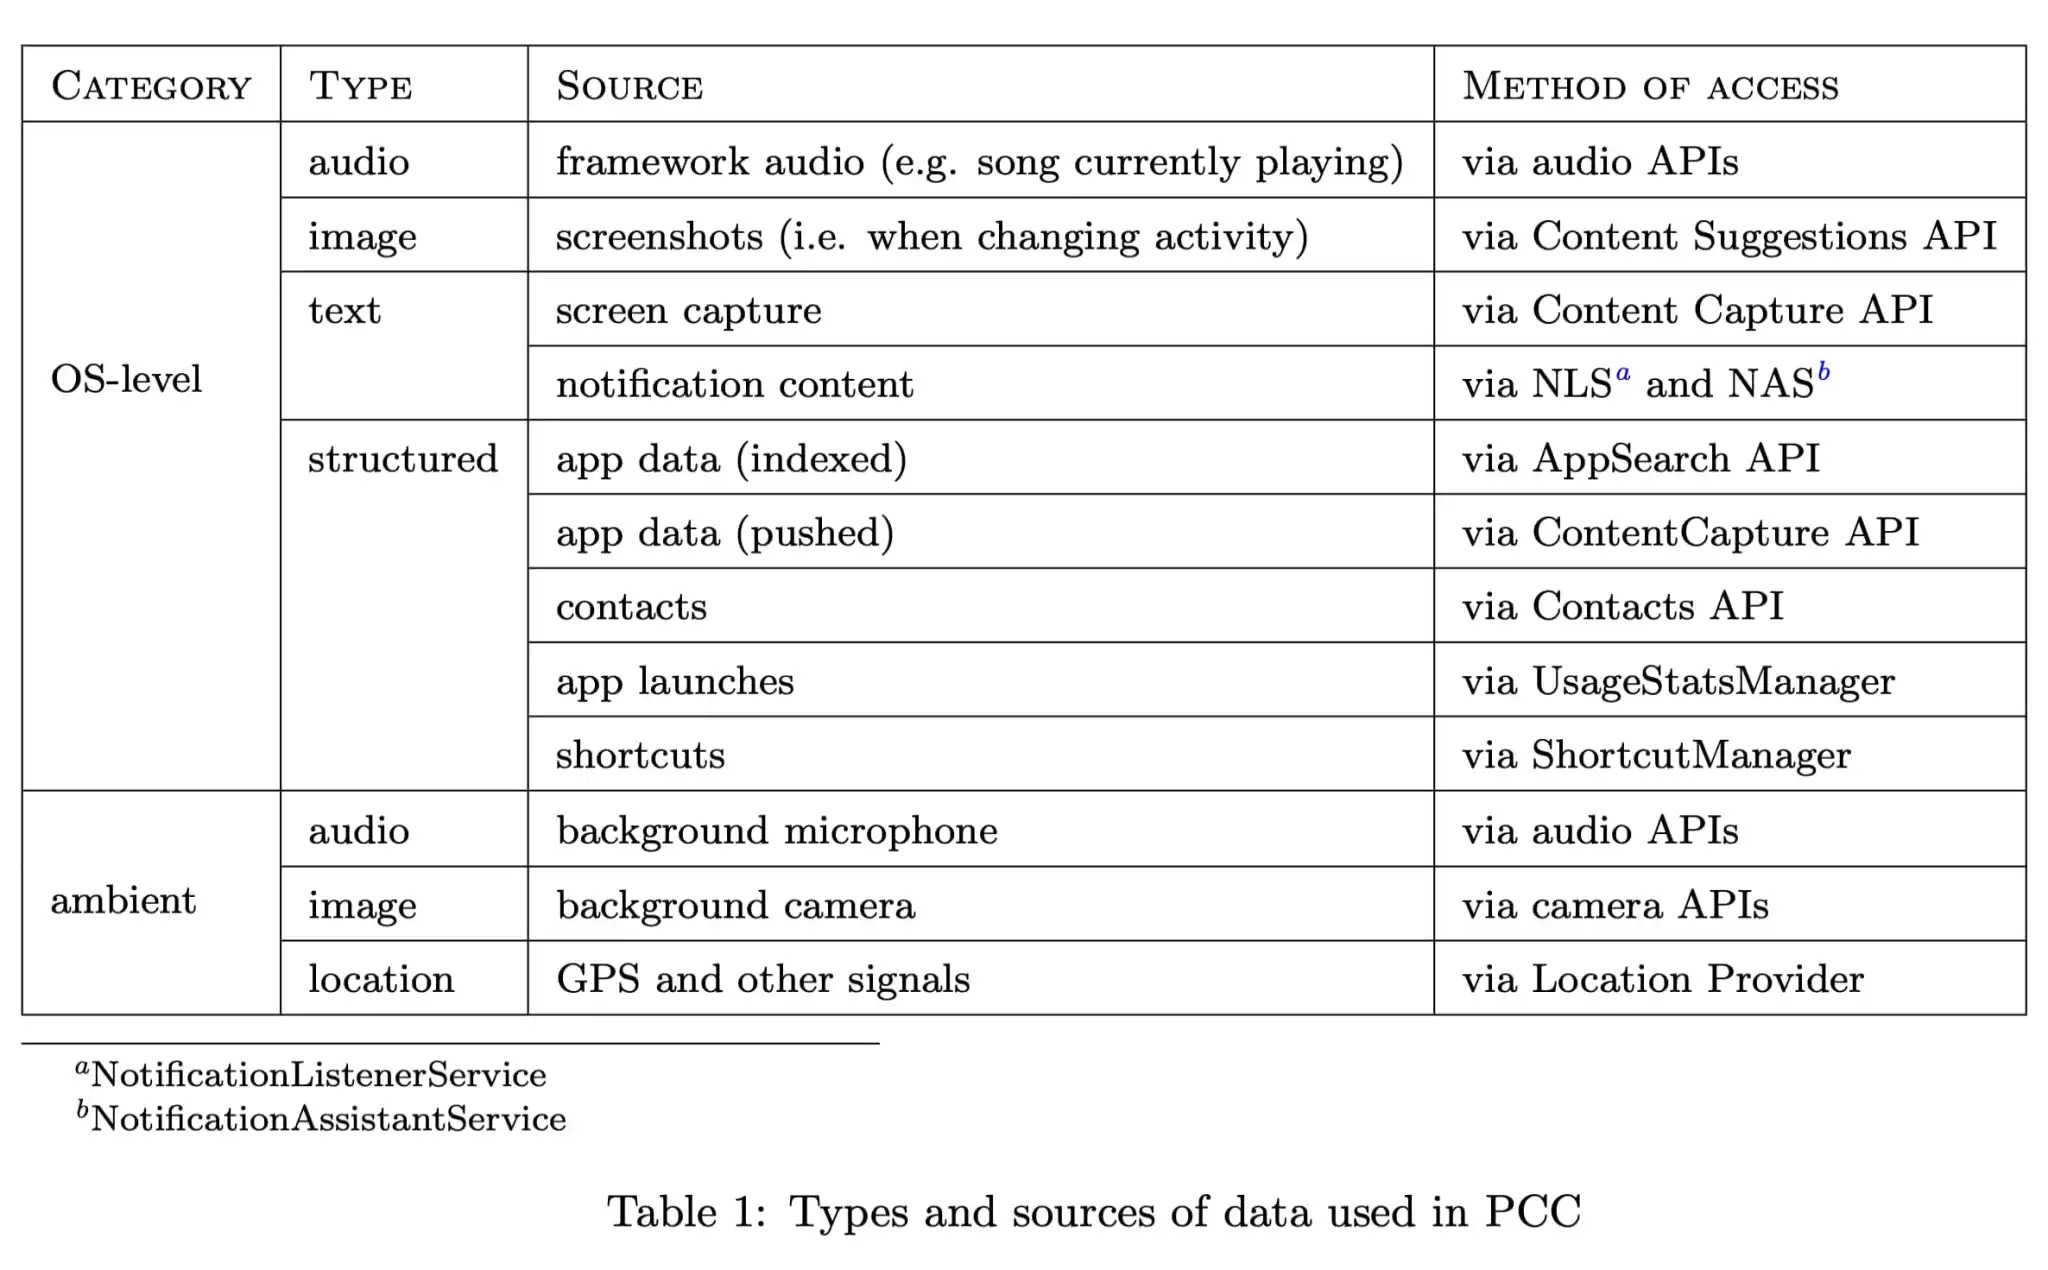 dati raccolti e utilizzati da PCC (Private Compute Core)